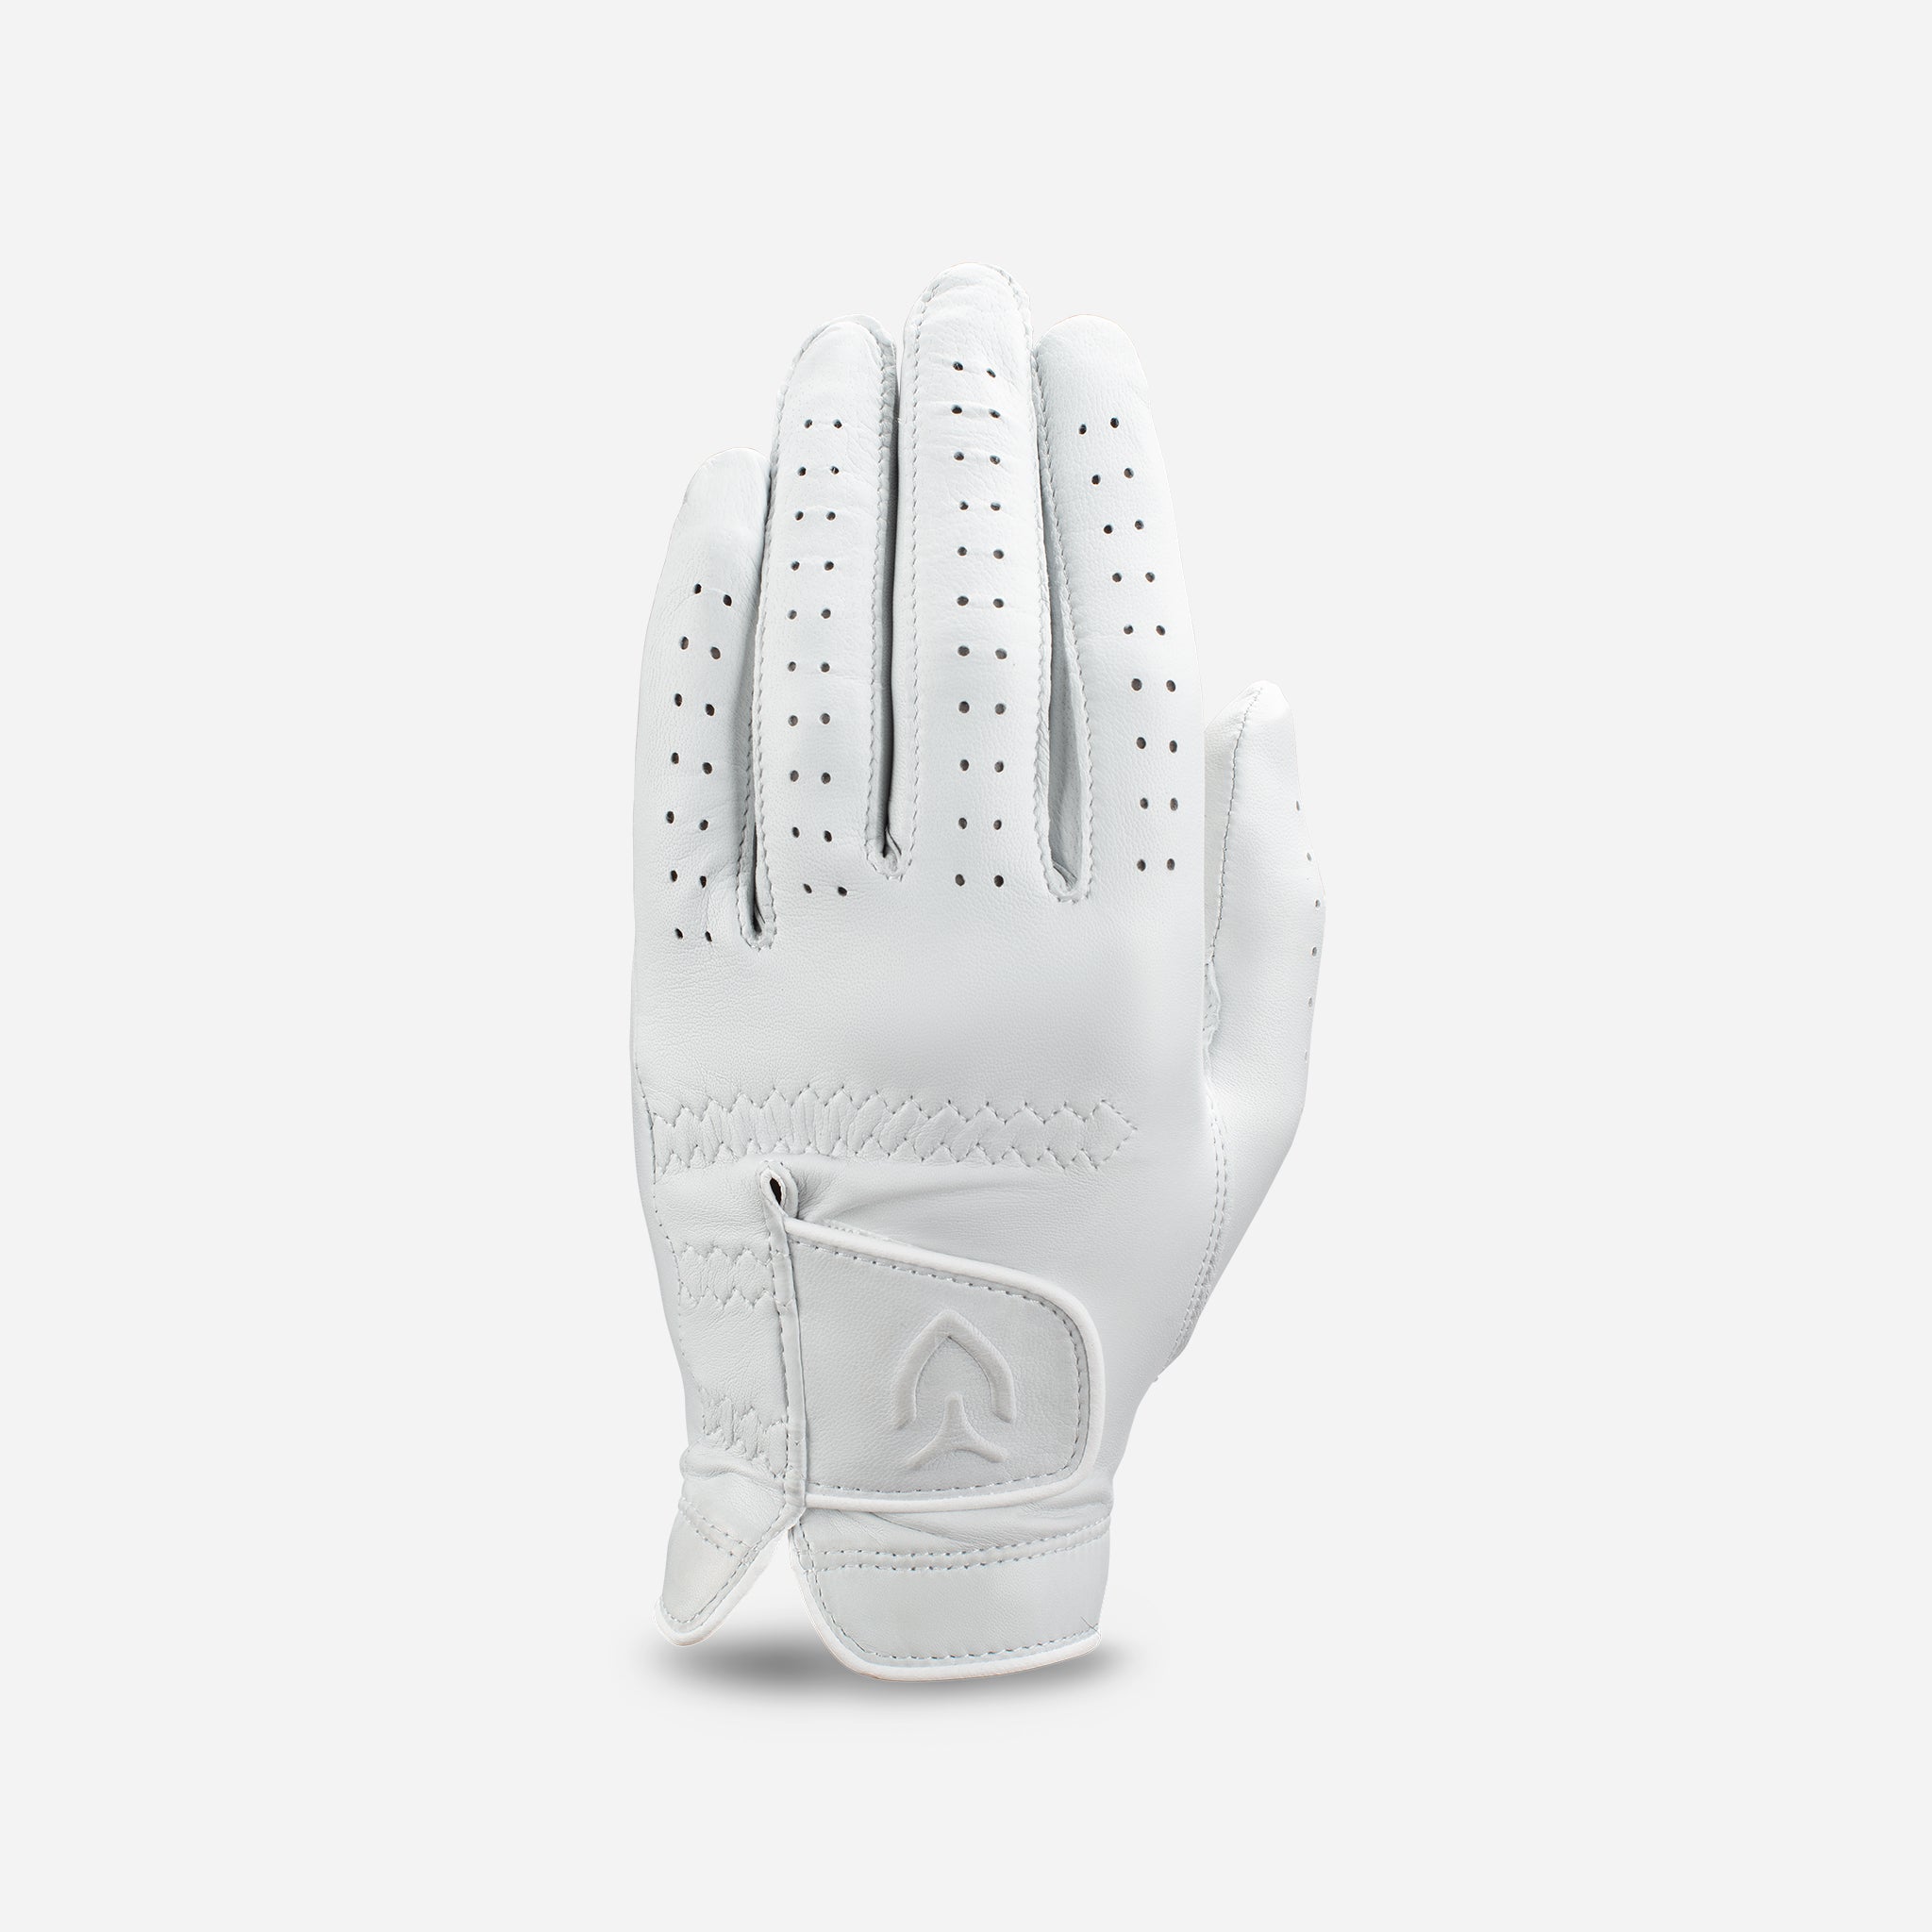 VESSEL Lux Golf Glove